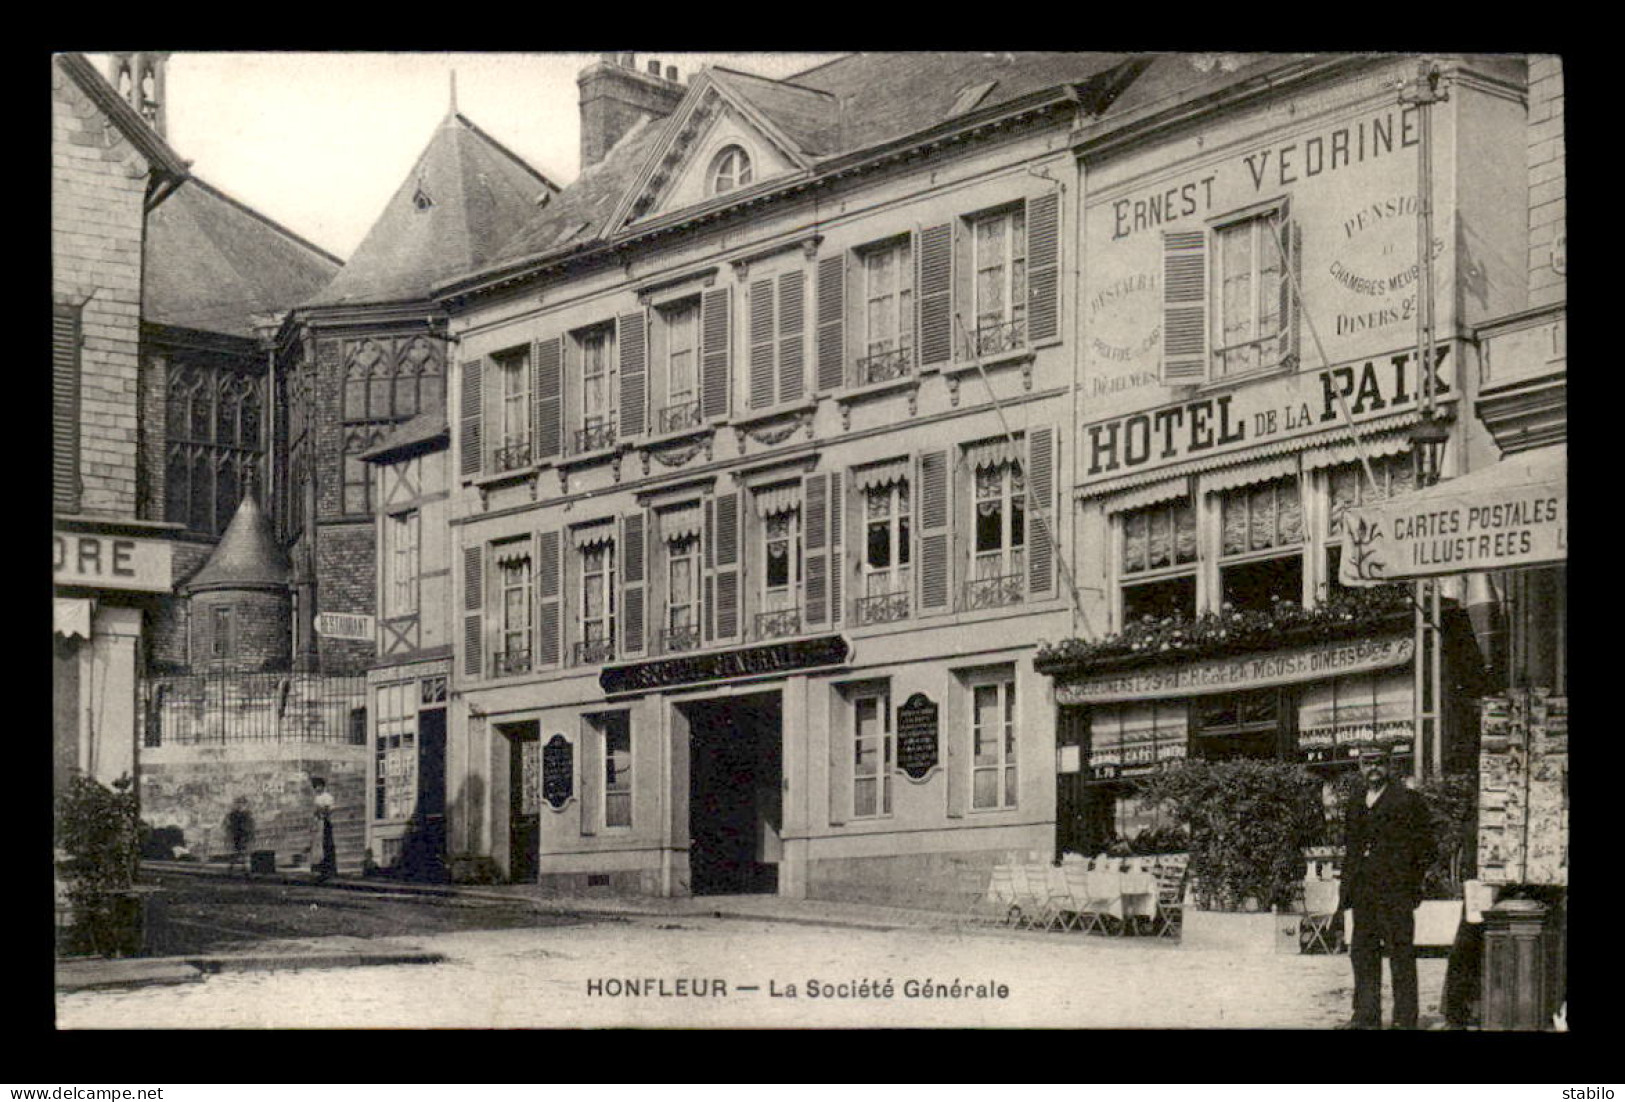 14 - HONFLEUR - BANQUE SOCIETE GENERALE - MAGASIN DE CARTES POSTALES - HOTEL DE LA PAIX - Honfleur